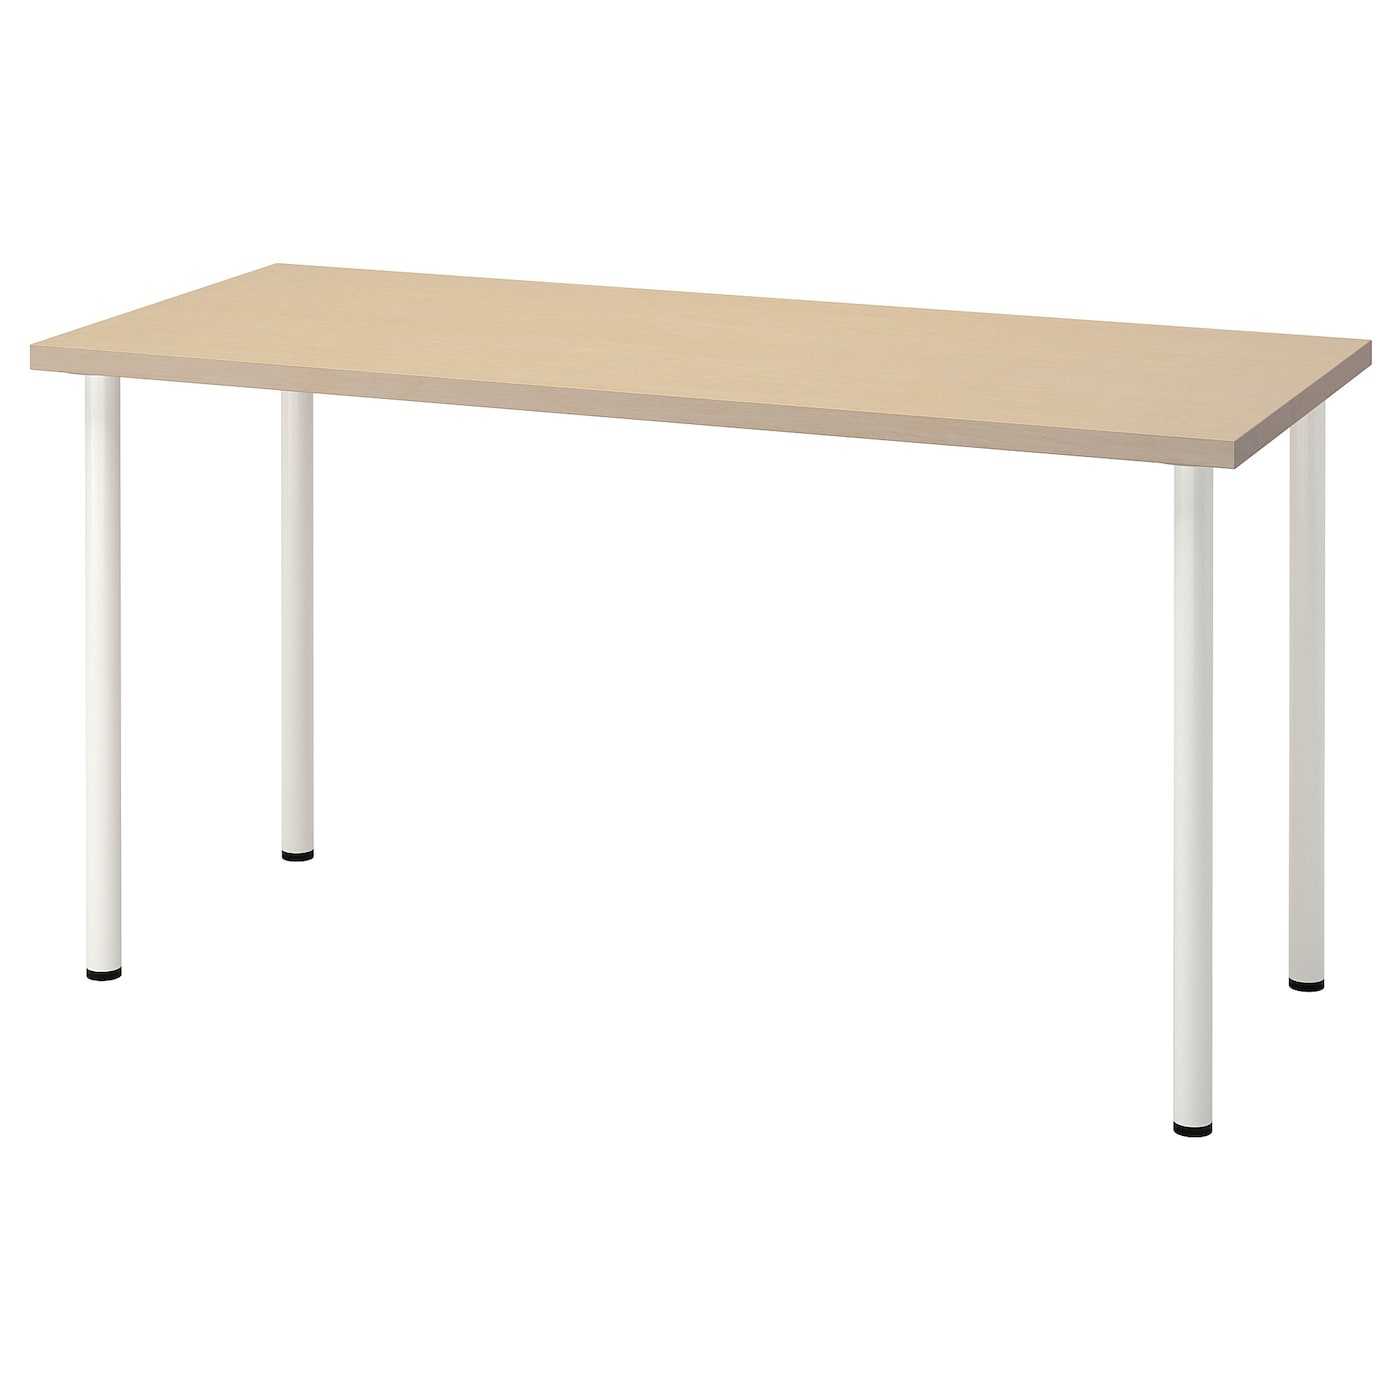 Рабочий стол - IKEA MÅLSKYTT/MALSKYTT/ADILS, 140х60 см, береза/белый, МОЛСКЮТТ/АДИЛЬС ИКЕА